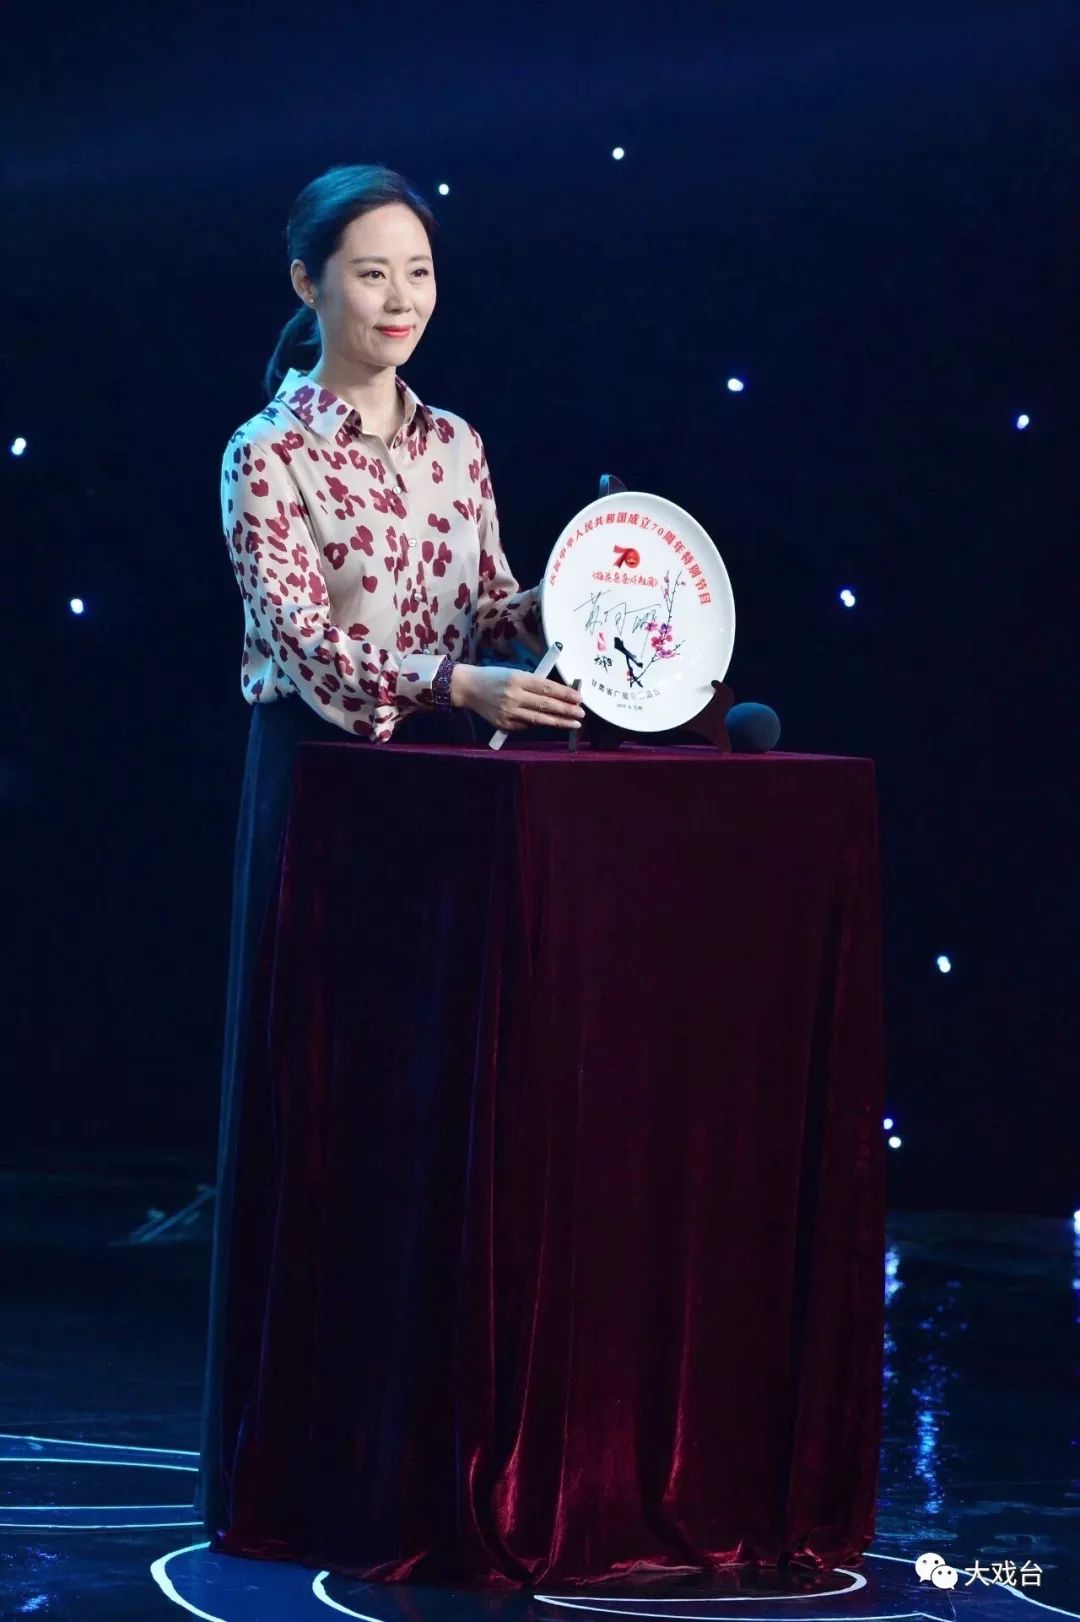 第21届中国戏剧梅花奖获得者李小锋与精神洗礼优秀传统文化的沐浴是